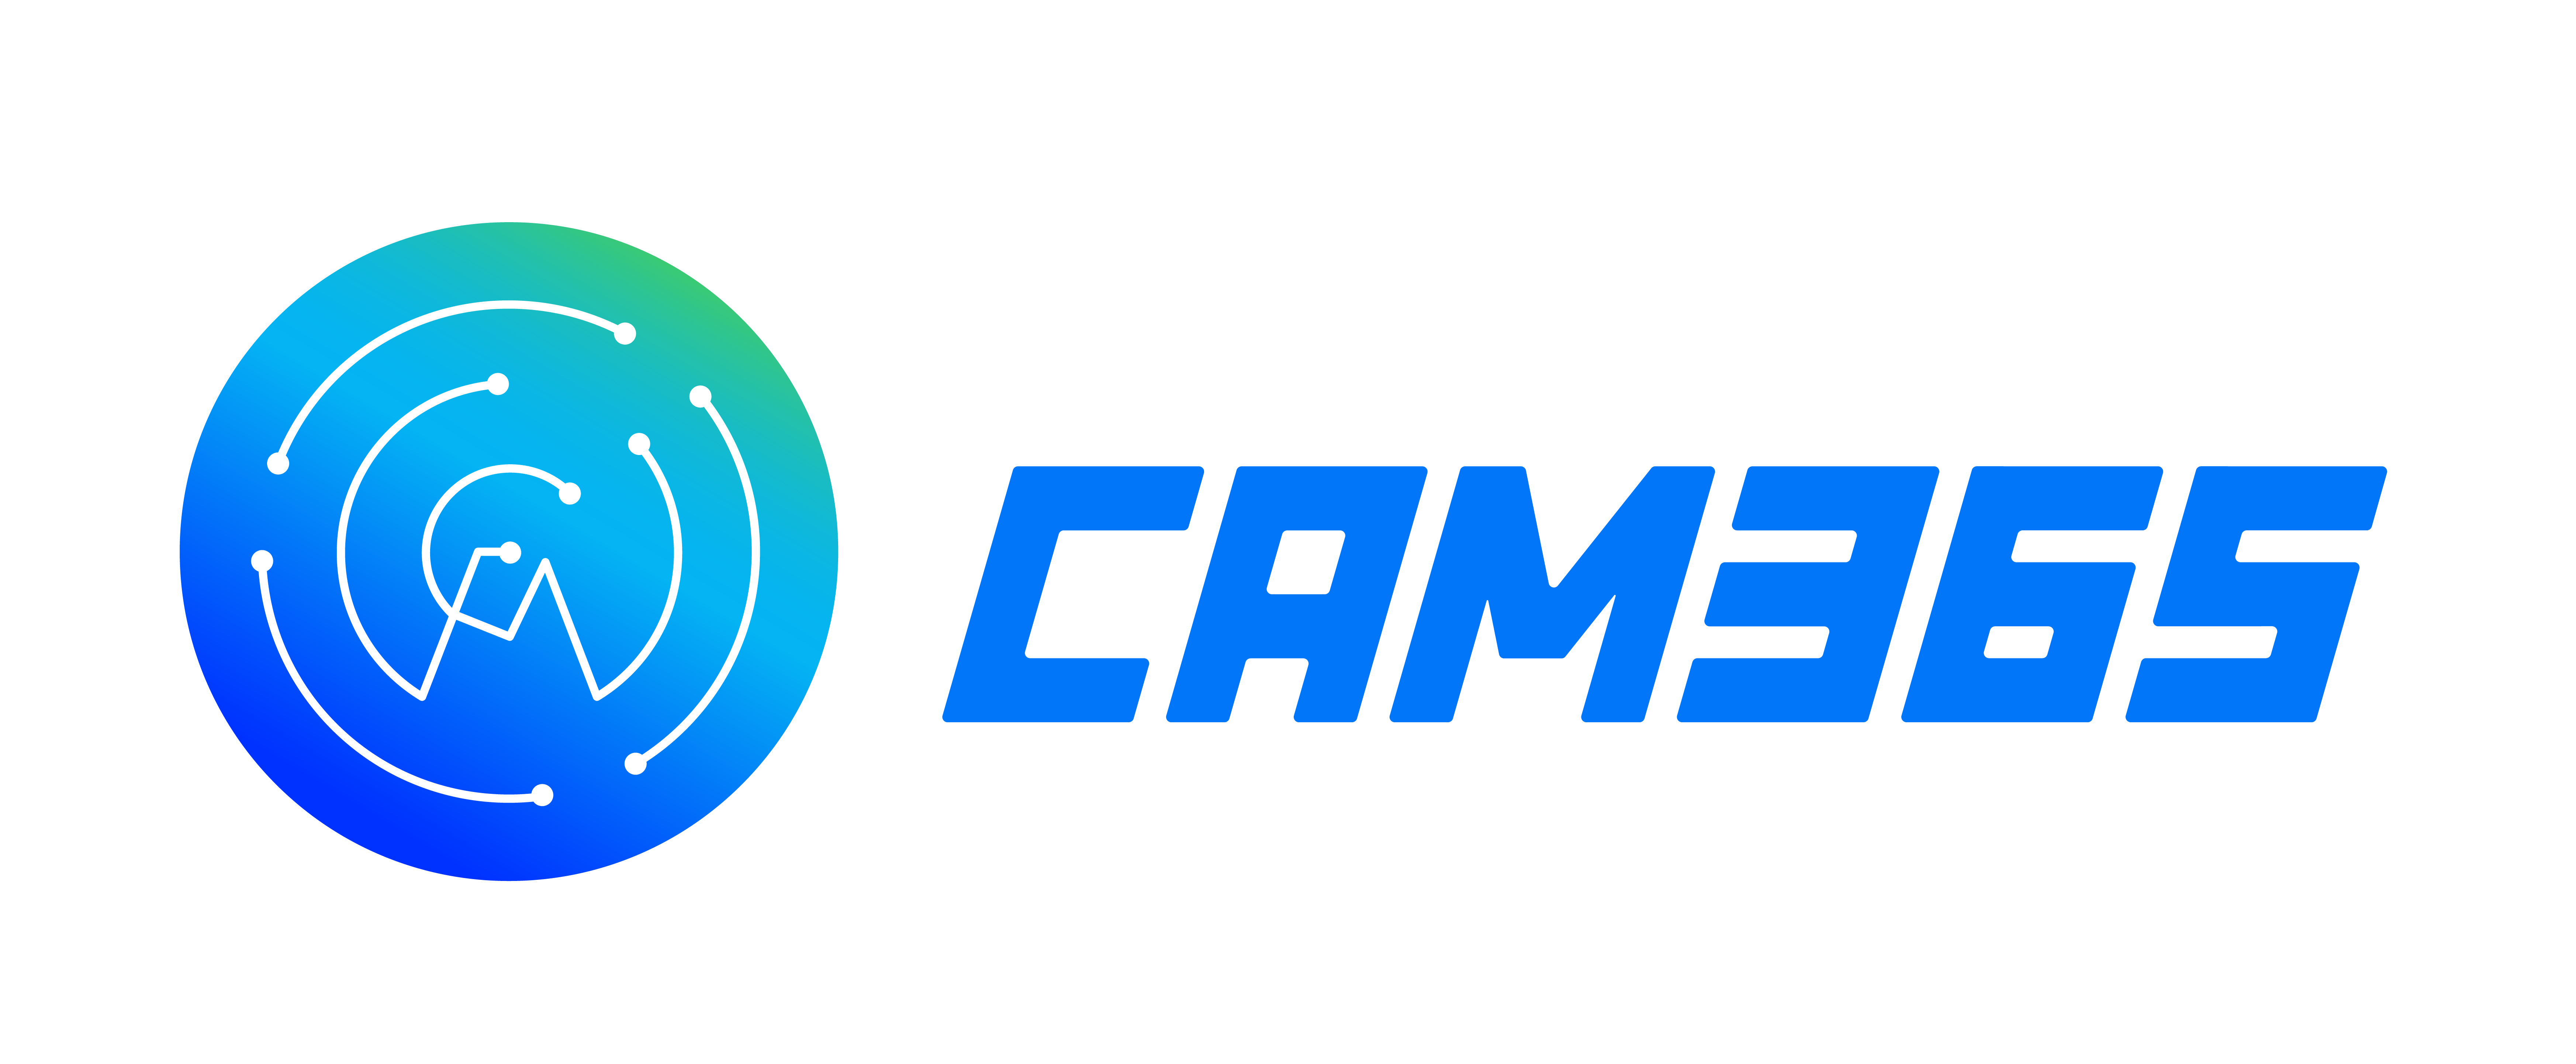 CAM365